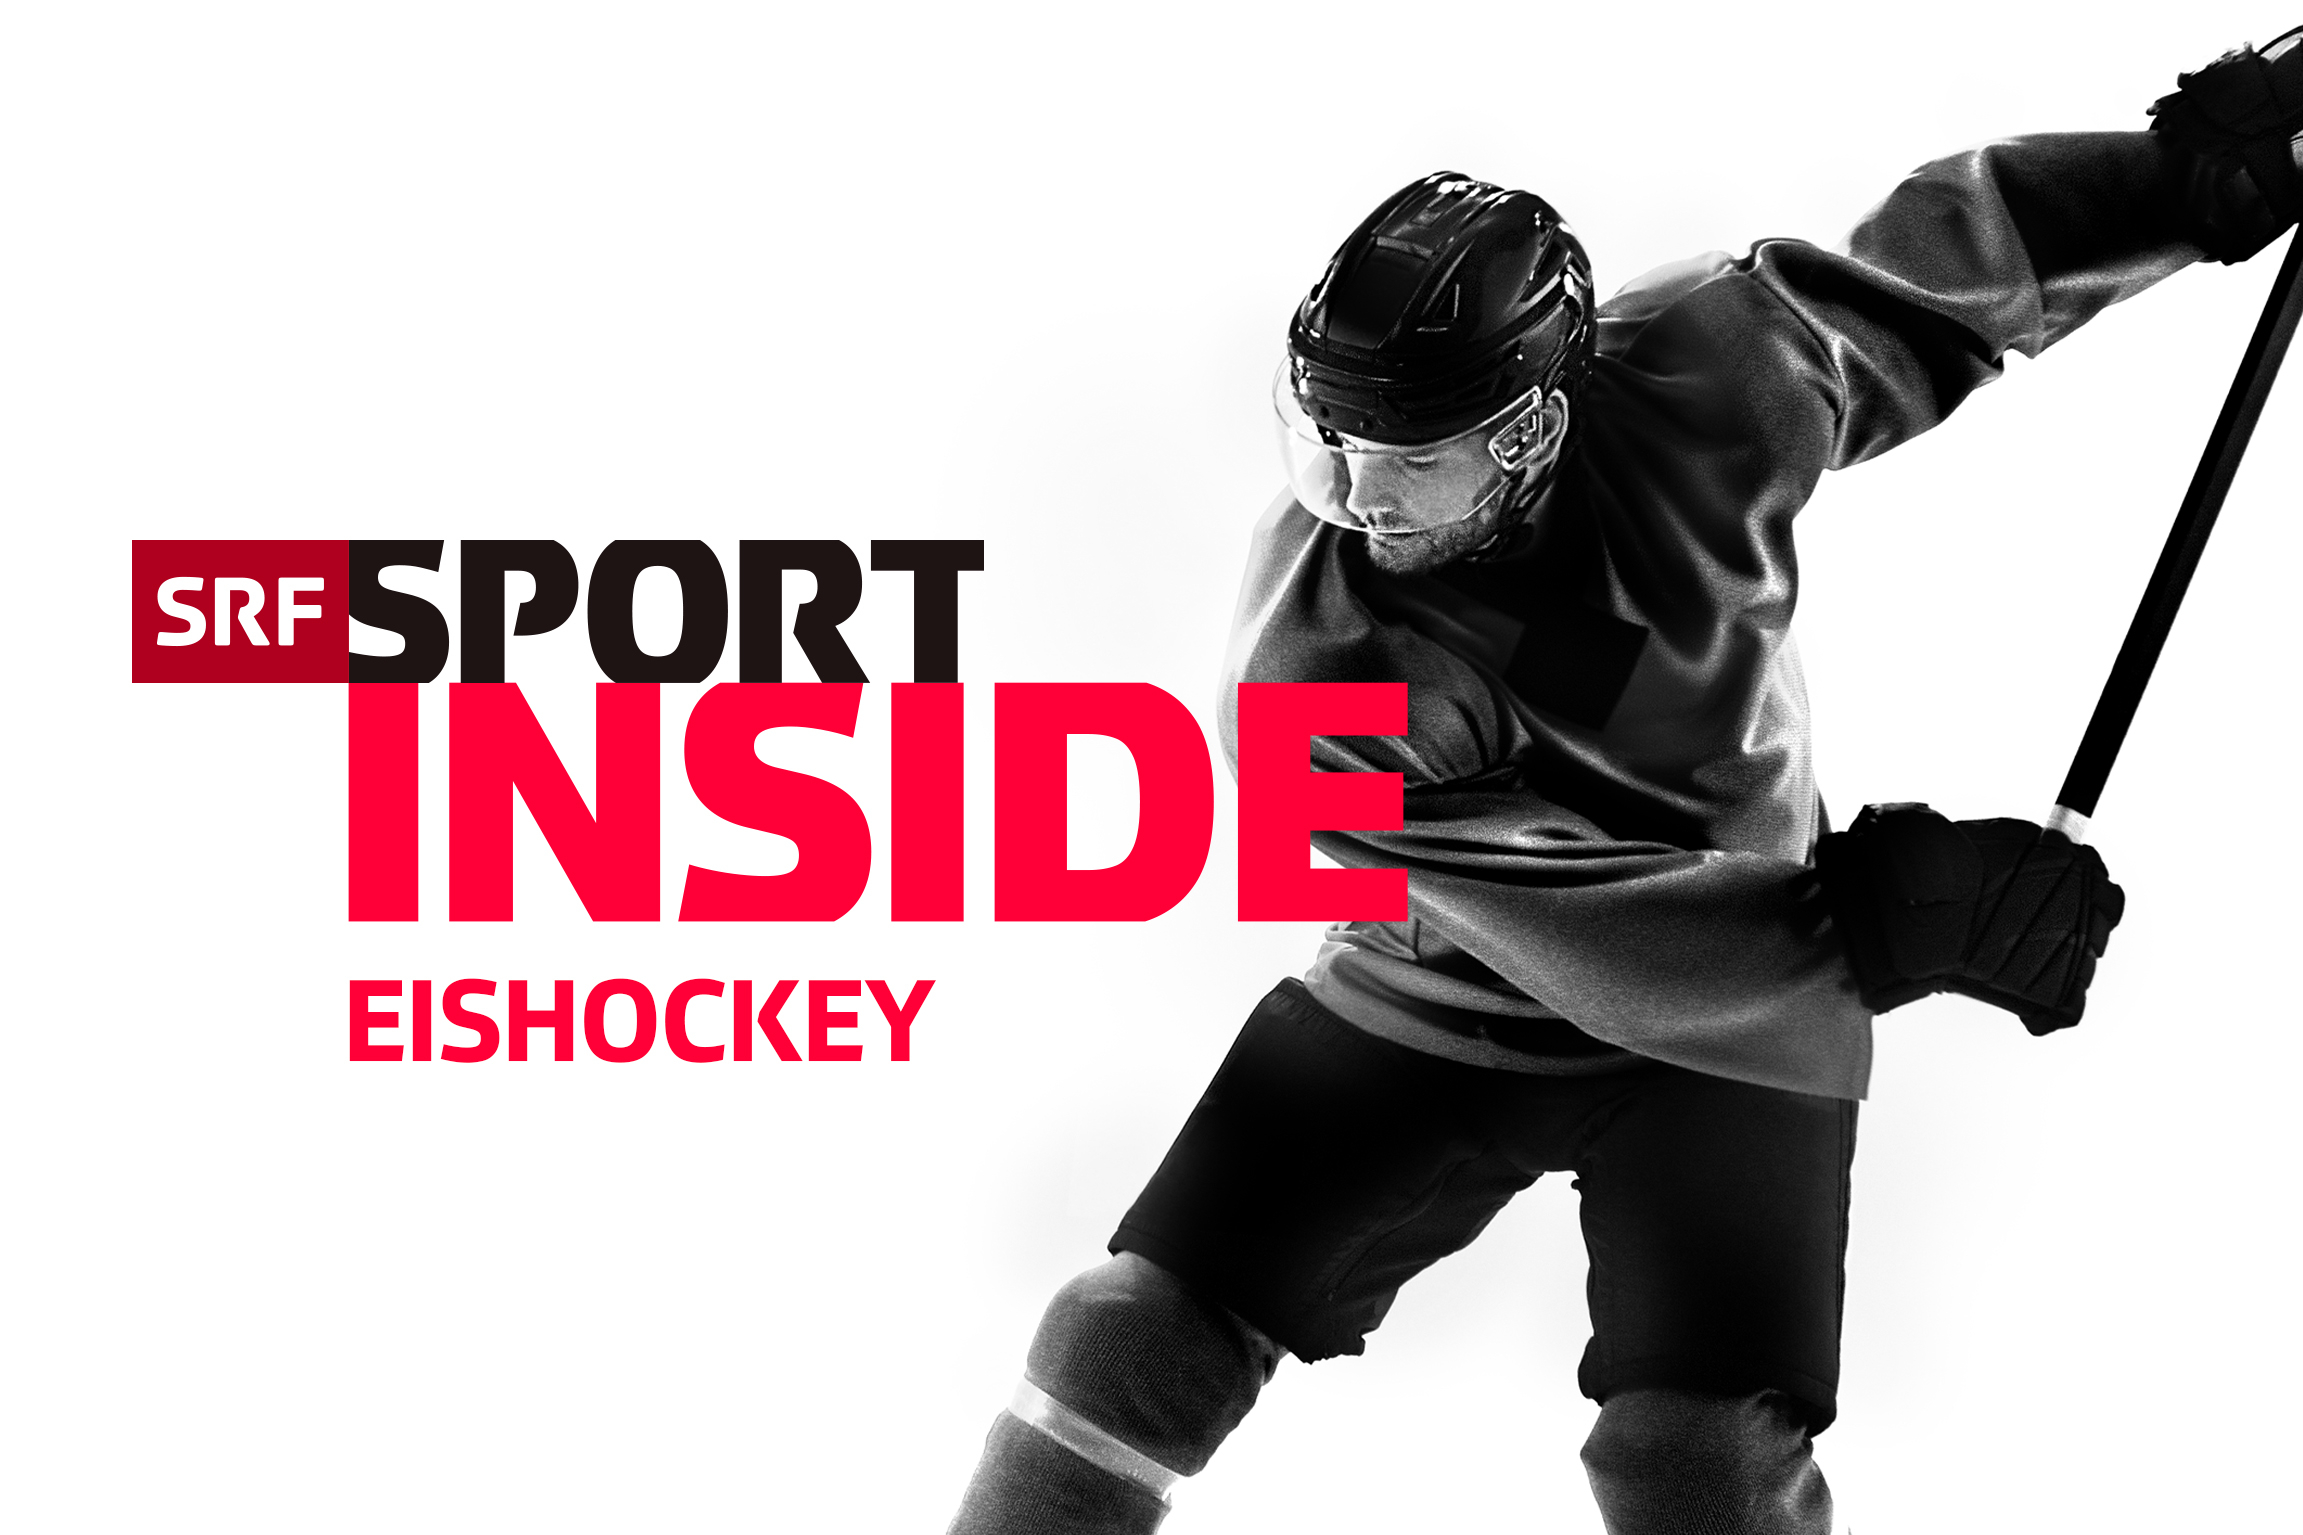 SRF Sport Eishockey – Inside Keyvisual 2022 Copyright: SRF